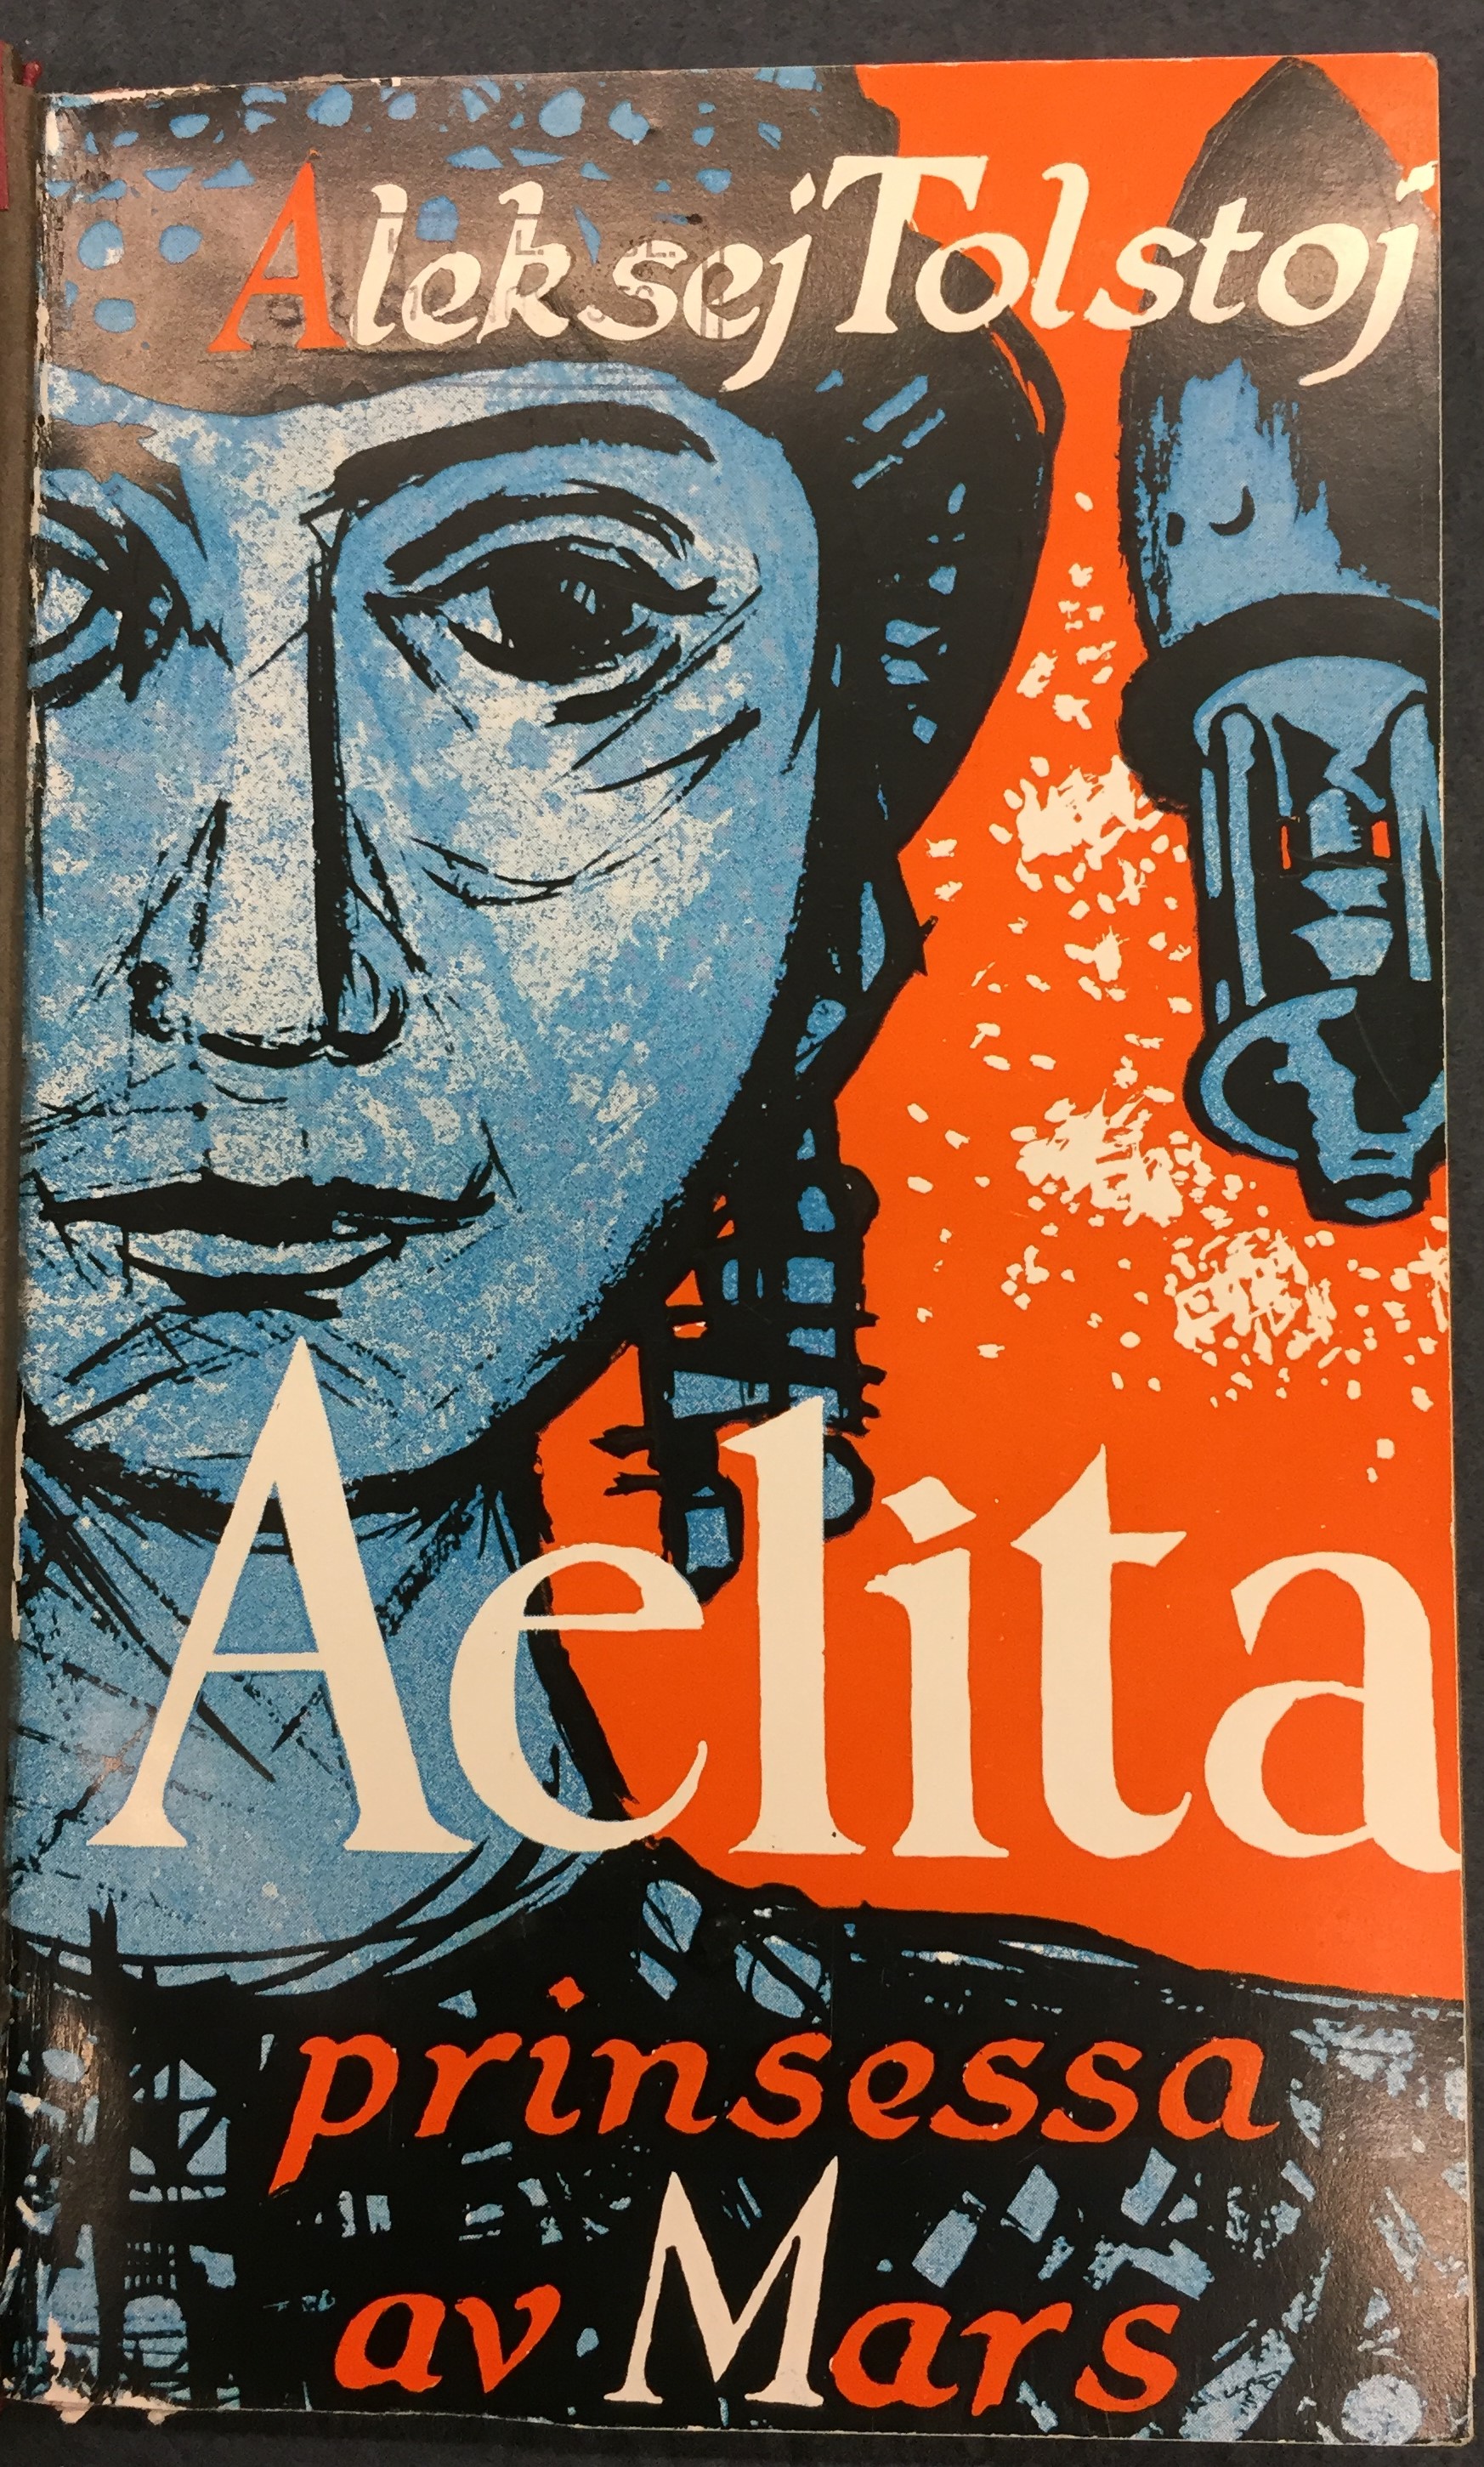 Omslag till Aelita. Kvinnoansikte och rymdraket i blått mot en orange bakgrund.